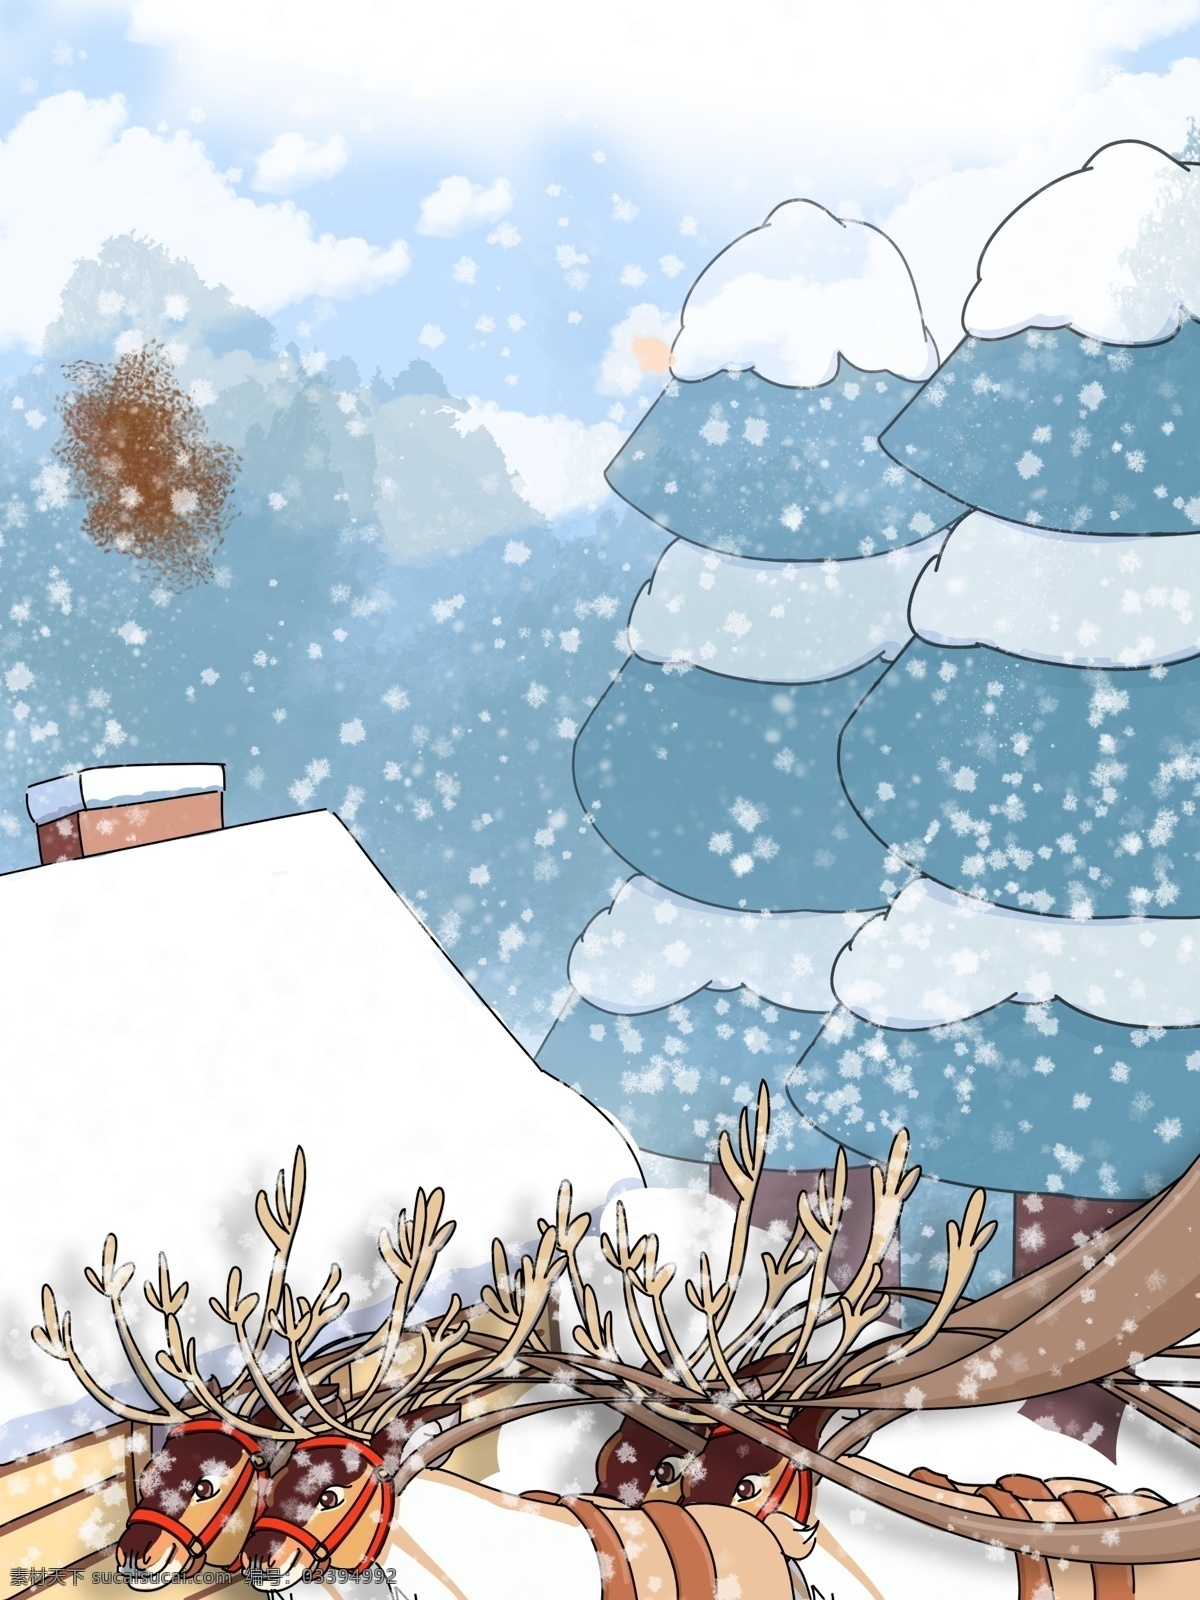 手绘 冬季 雪地 麋鹿 背景 冬天 圣诞背景 背景图 广告背景 手绘背景 psd背景 促销背景 背景展板图